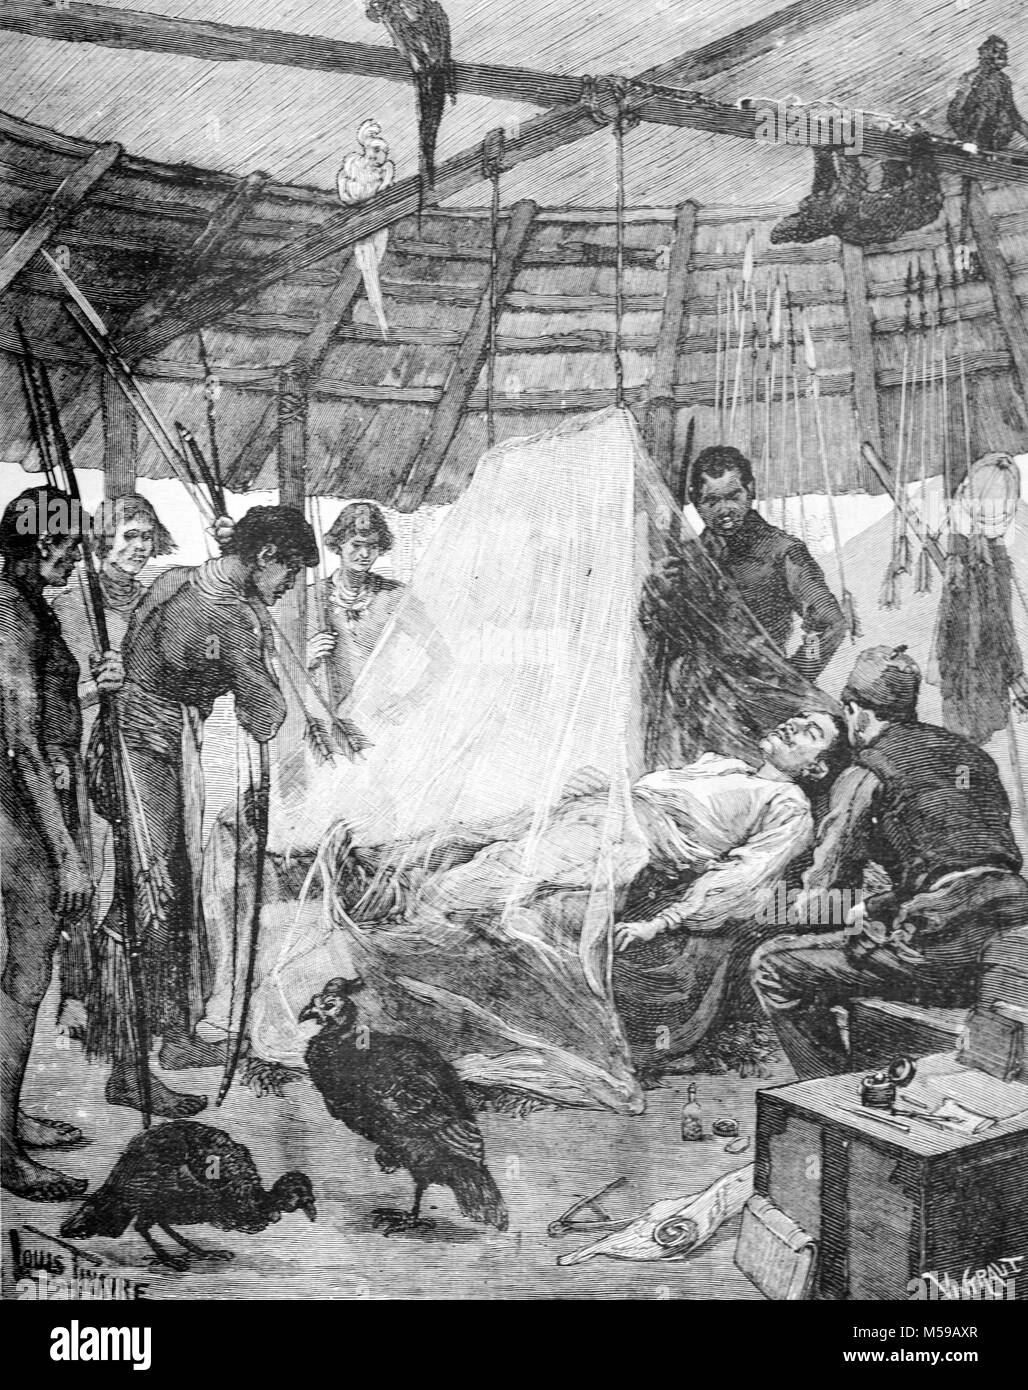 Henri Anatole Coudreau (1859-1899), französischer Geograph und Explorer von Französisch Guyana und dem Amazonas Malaria leiden in den späten 1880er Jahren. Er starb an Malaria zehn Jahre später beim Erkunden der Trombetas River 1899 (Gravur, 1889) Stockfoto